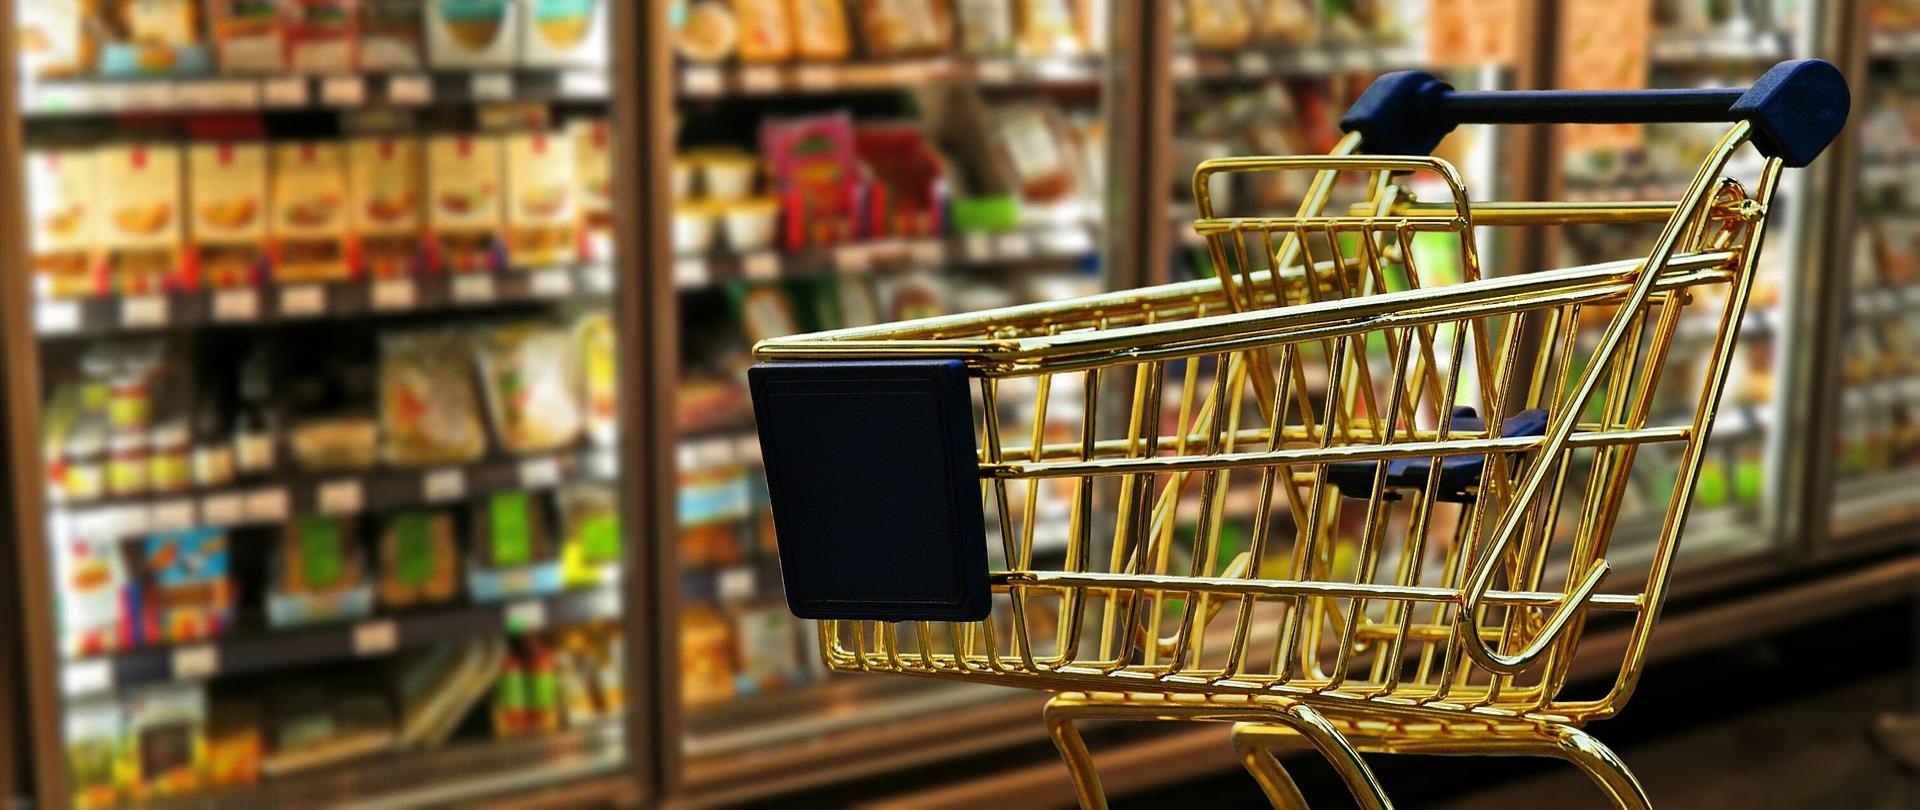 Na zdjęciu jest duży wózek na zakupy, w tle lodówki z produktami spożywczymi.